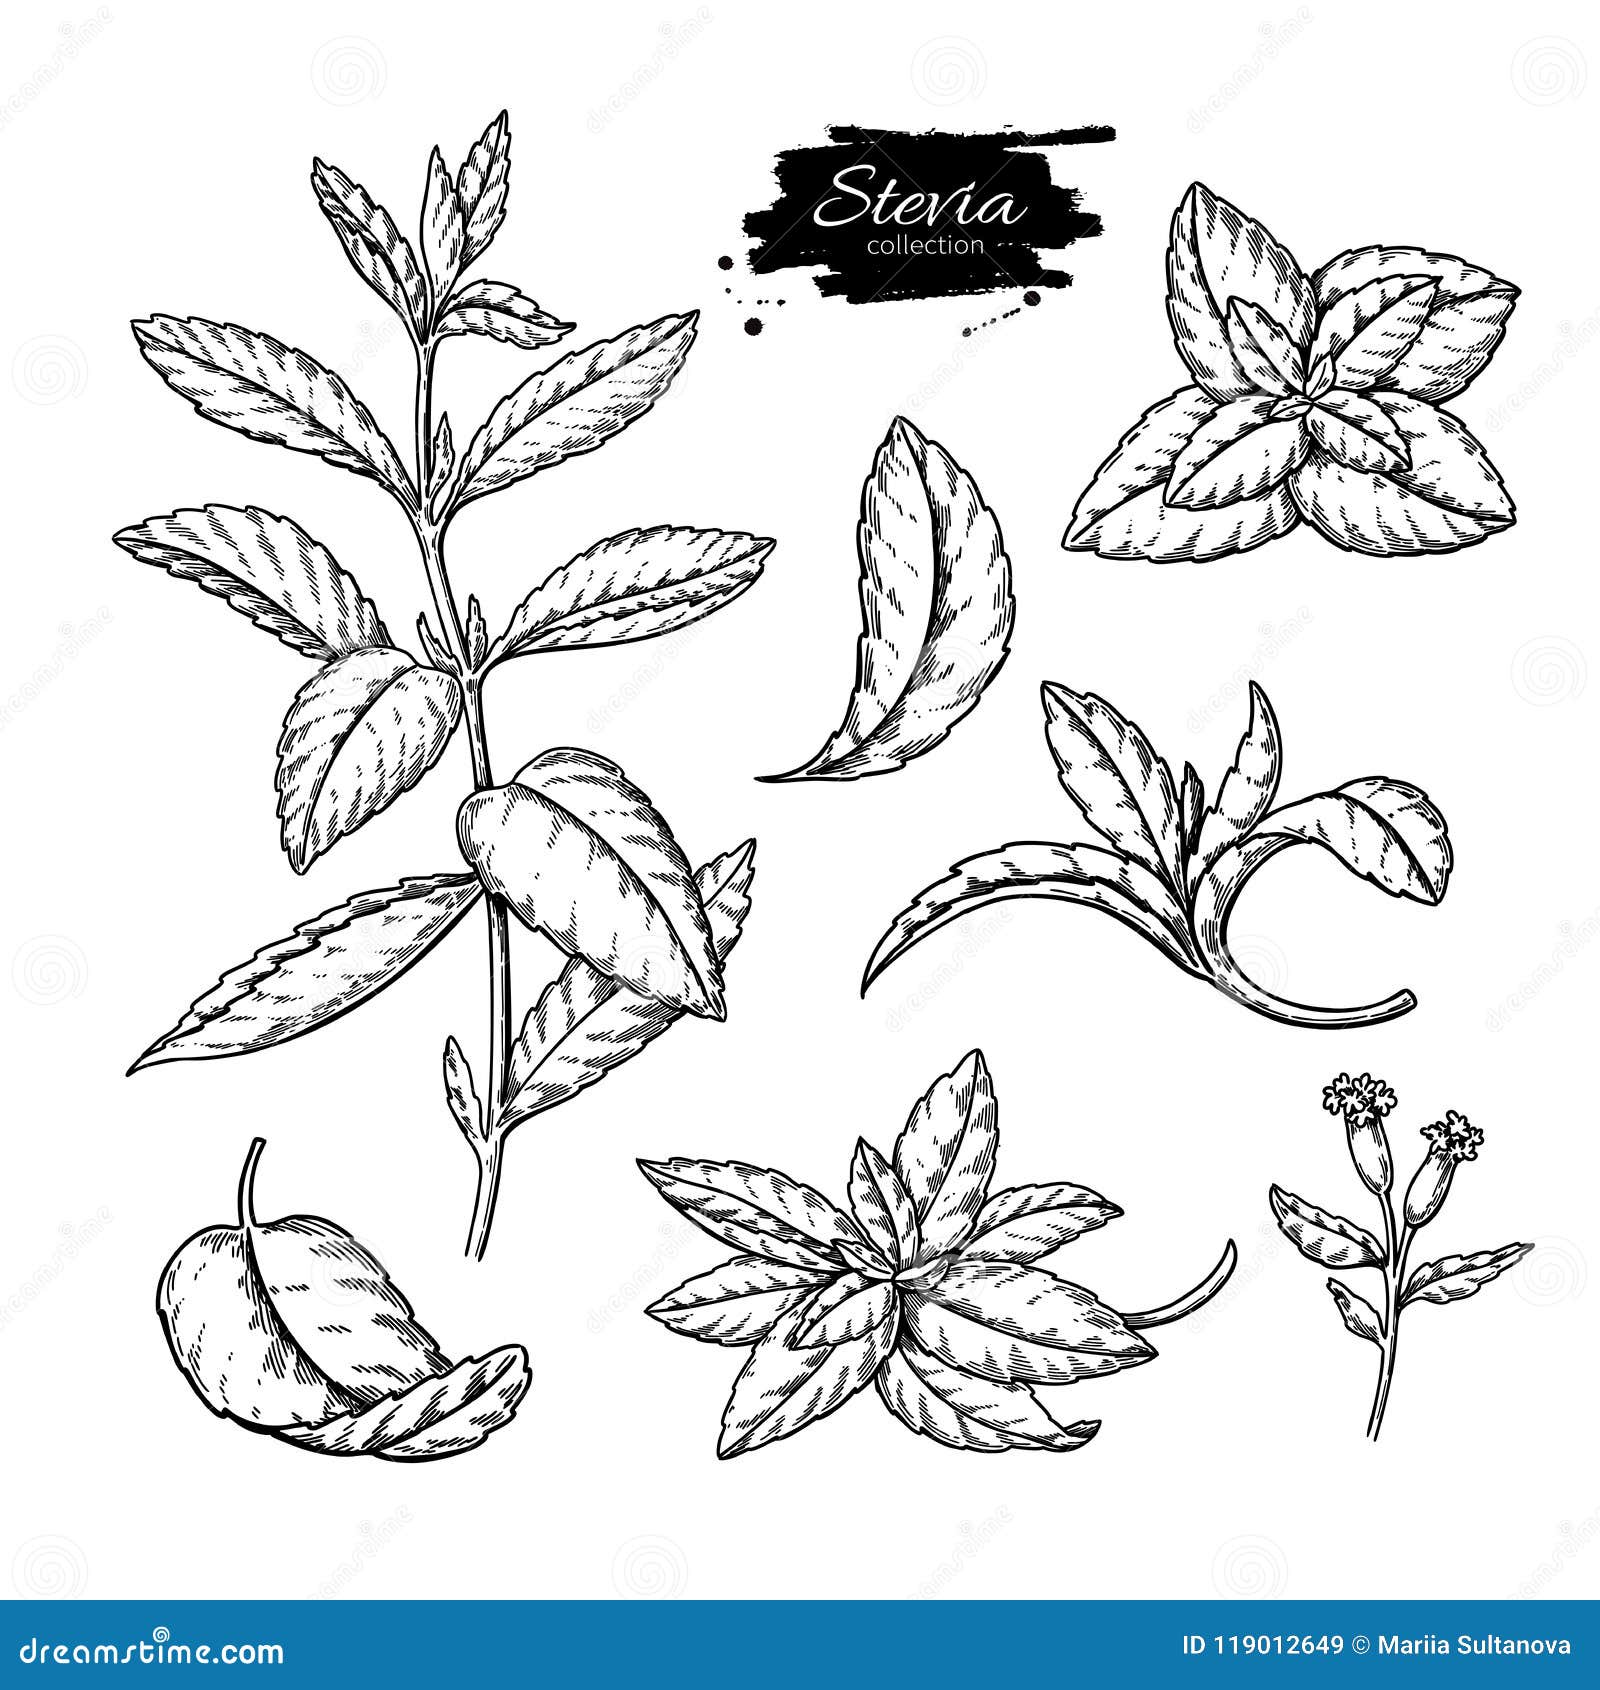 stevia  drawing. herbal sketch of sweetener sugar substitute. vintage engraved  of superfood.